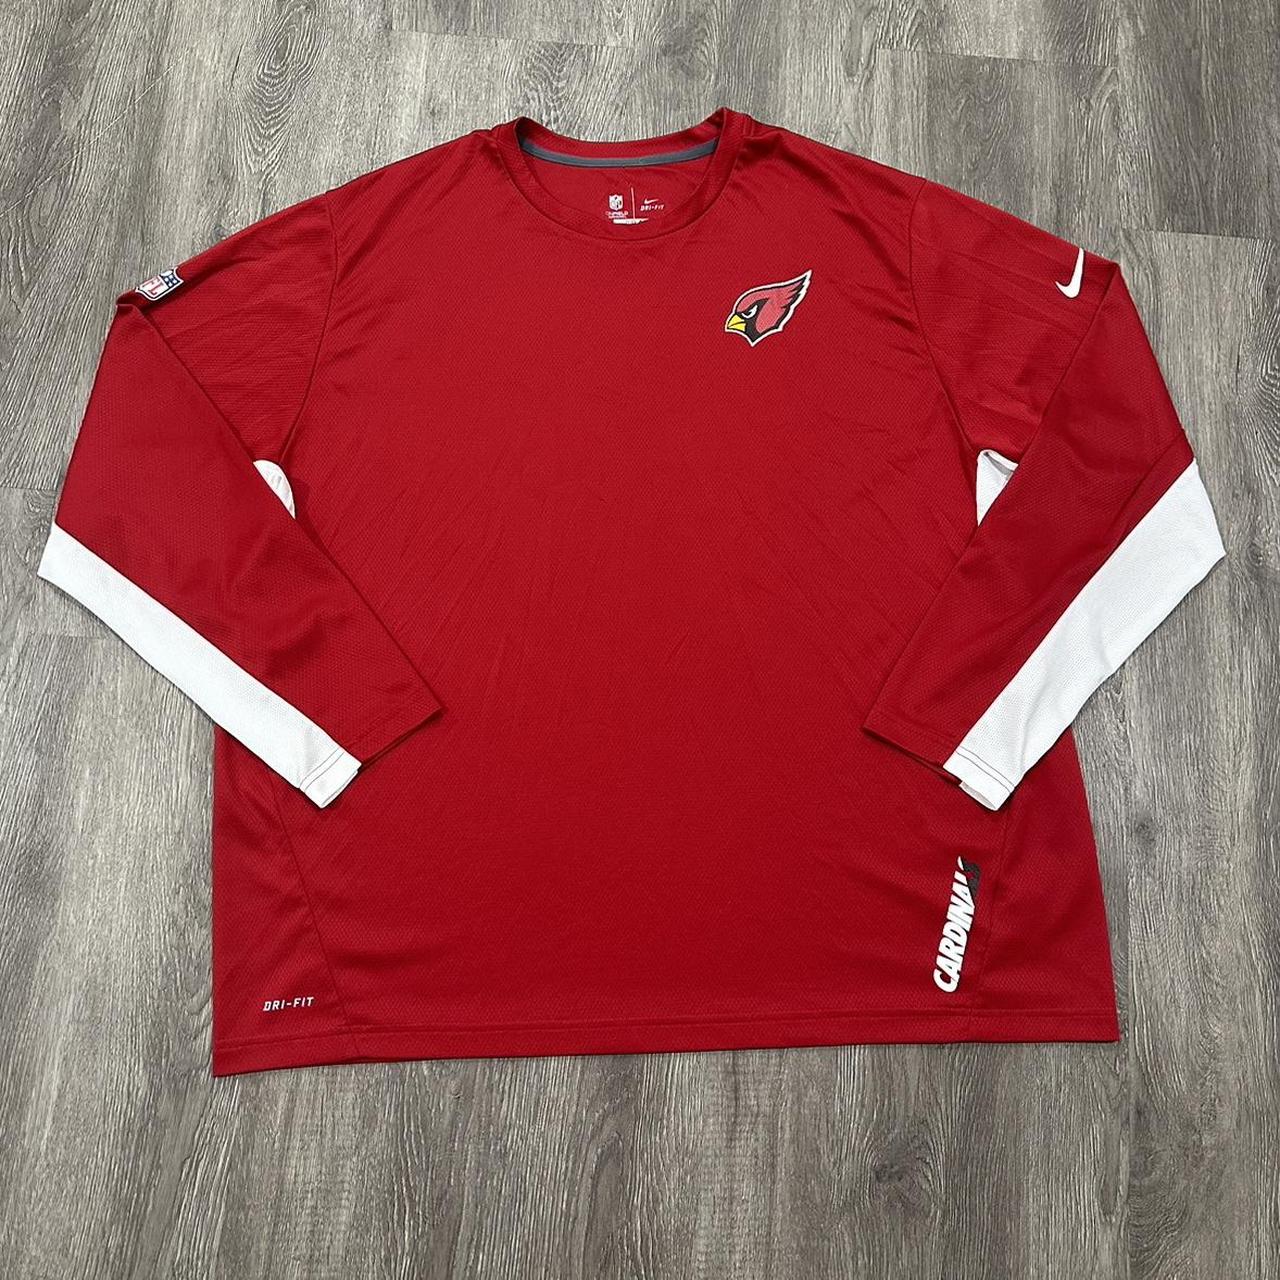 Nike Arizona Cardinals Shirt Adult Size 4XL Red - Depop